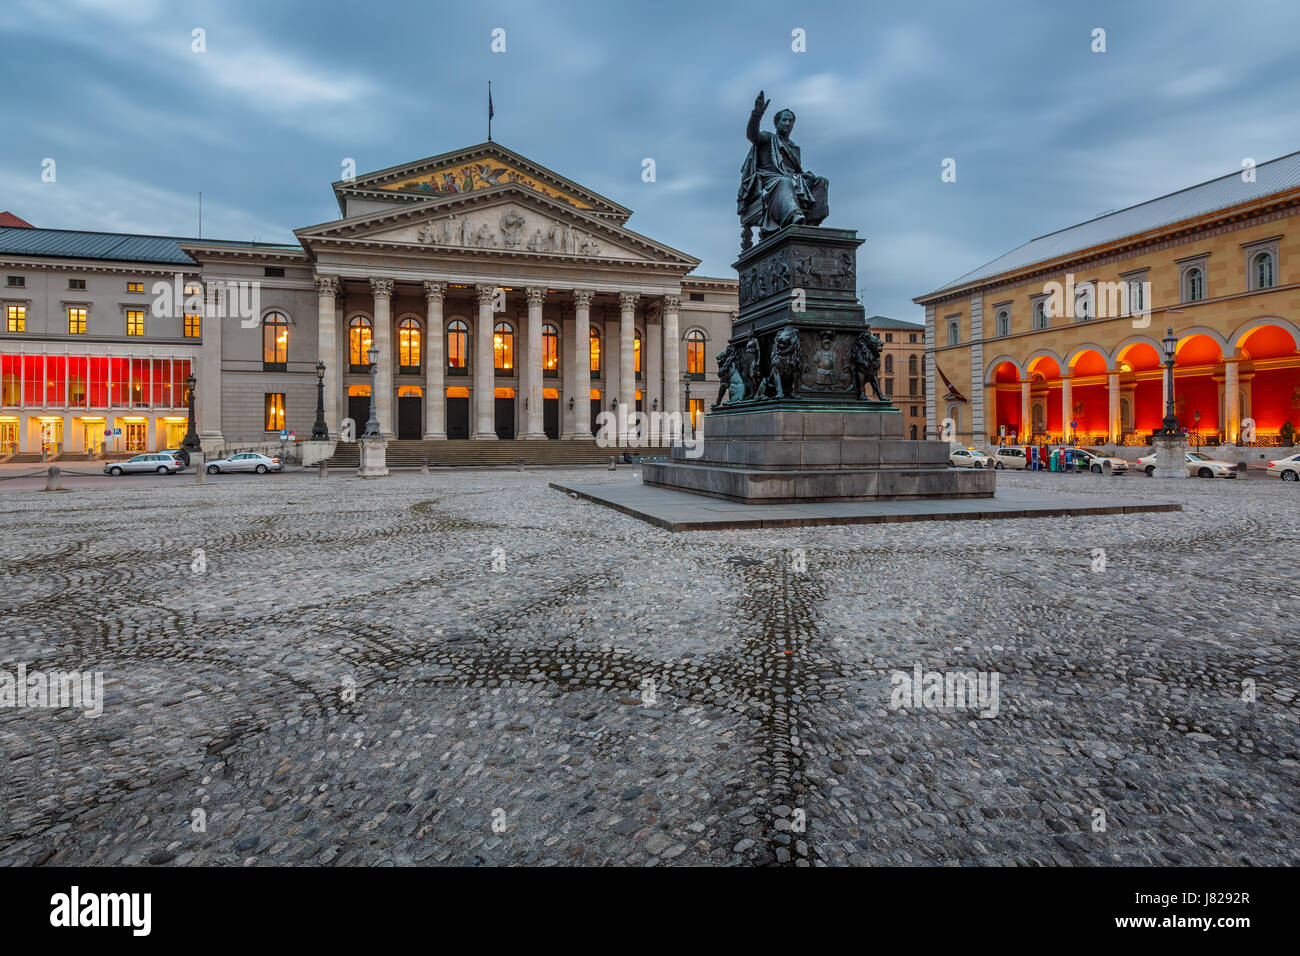 Das Nationaltheater in München am Max-Joseph-Platz-Platz in München, Bayern, Deutschland Stockfoto